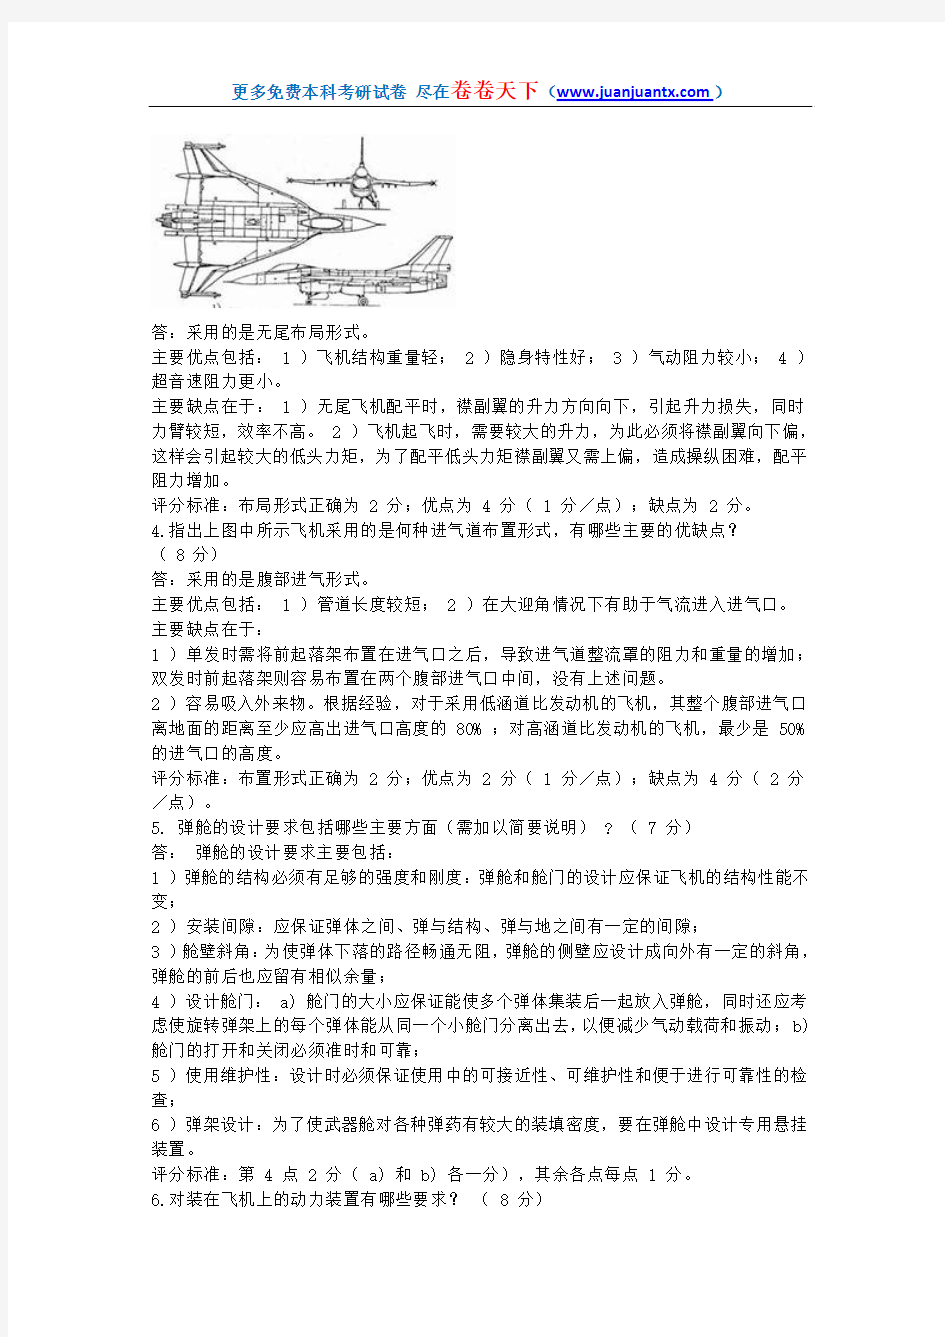 北京航空航天大学飞机总体设计期末试卷2答案